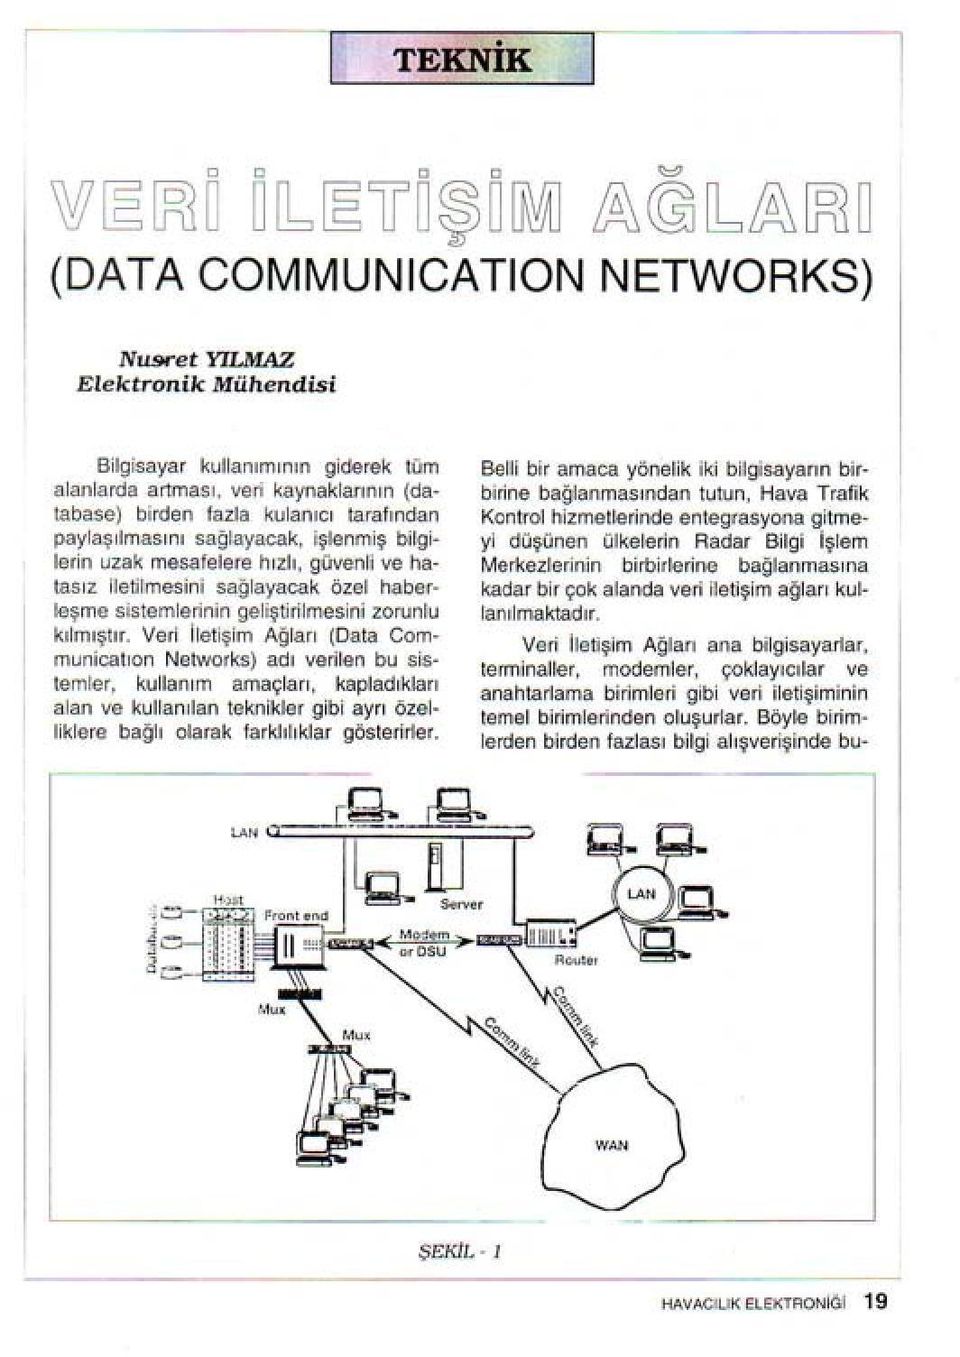 Ver letşm Ağları (Data Communcatıon Networks) adı verlen bu sstemler, kullanım amaçları, kapladıkları alan ve kullanlan teknkler gb ayrı özel lklere bağlı olarak farklılıklar gösterrler.